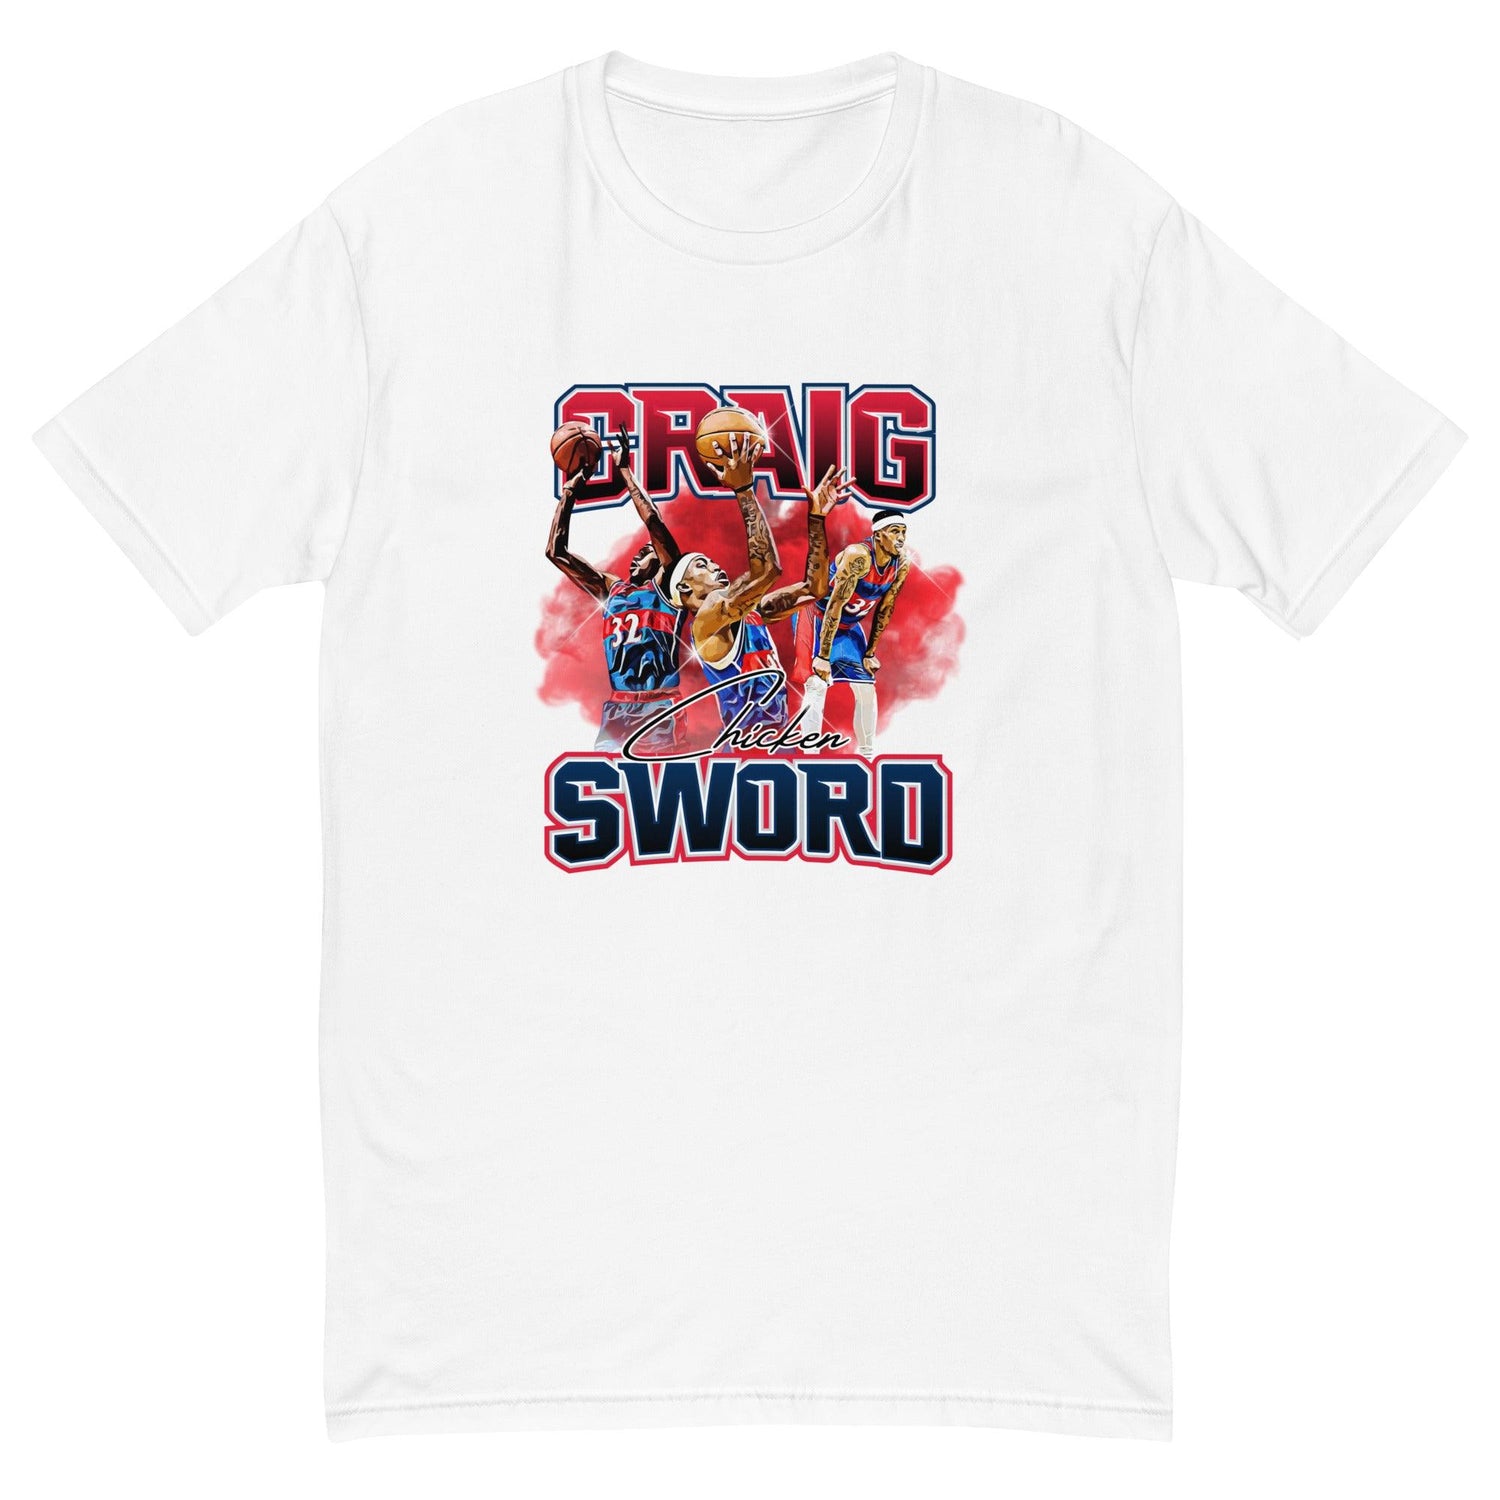 Craig Sword "Limited Edition" T-shirt - Fan Arch